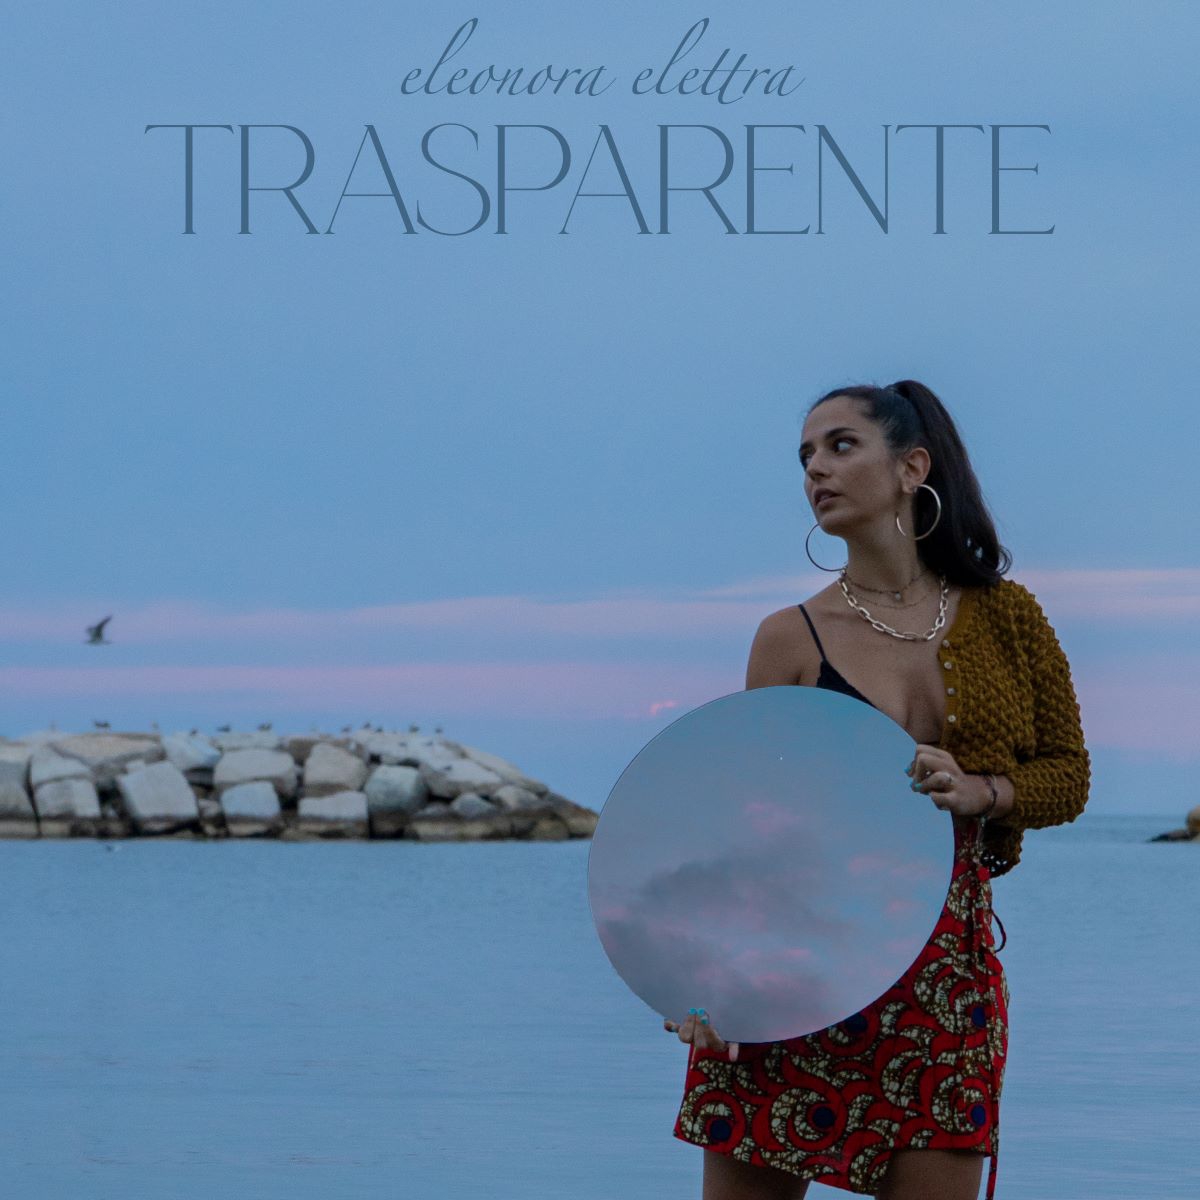 Eleonora Elettra - “Trasparente”